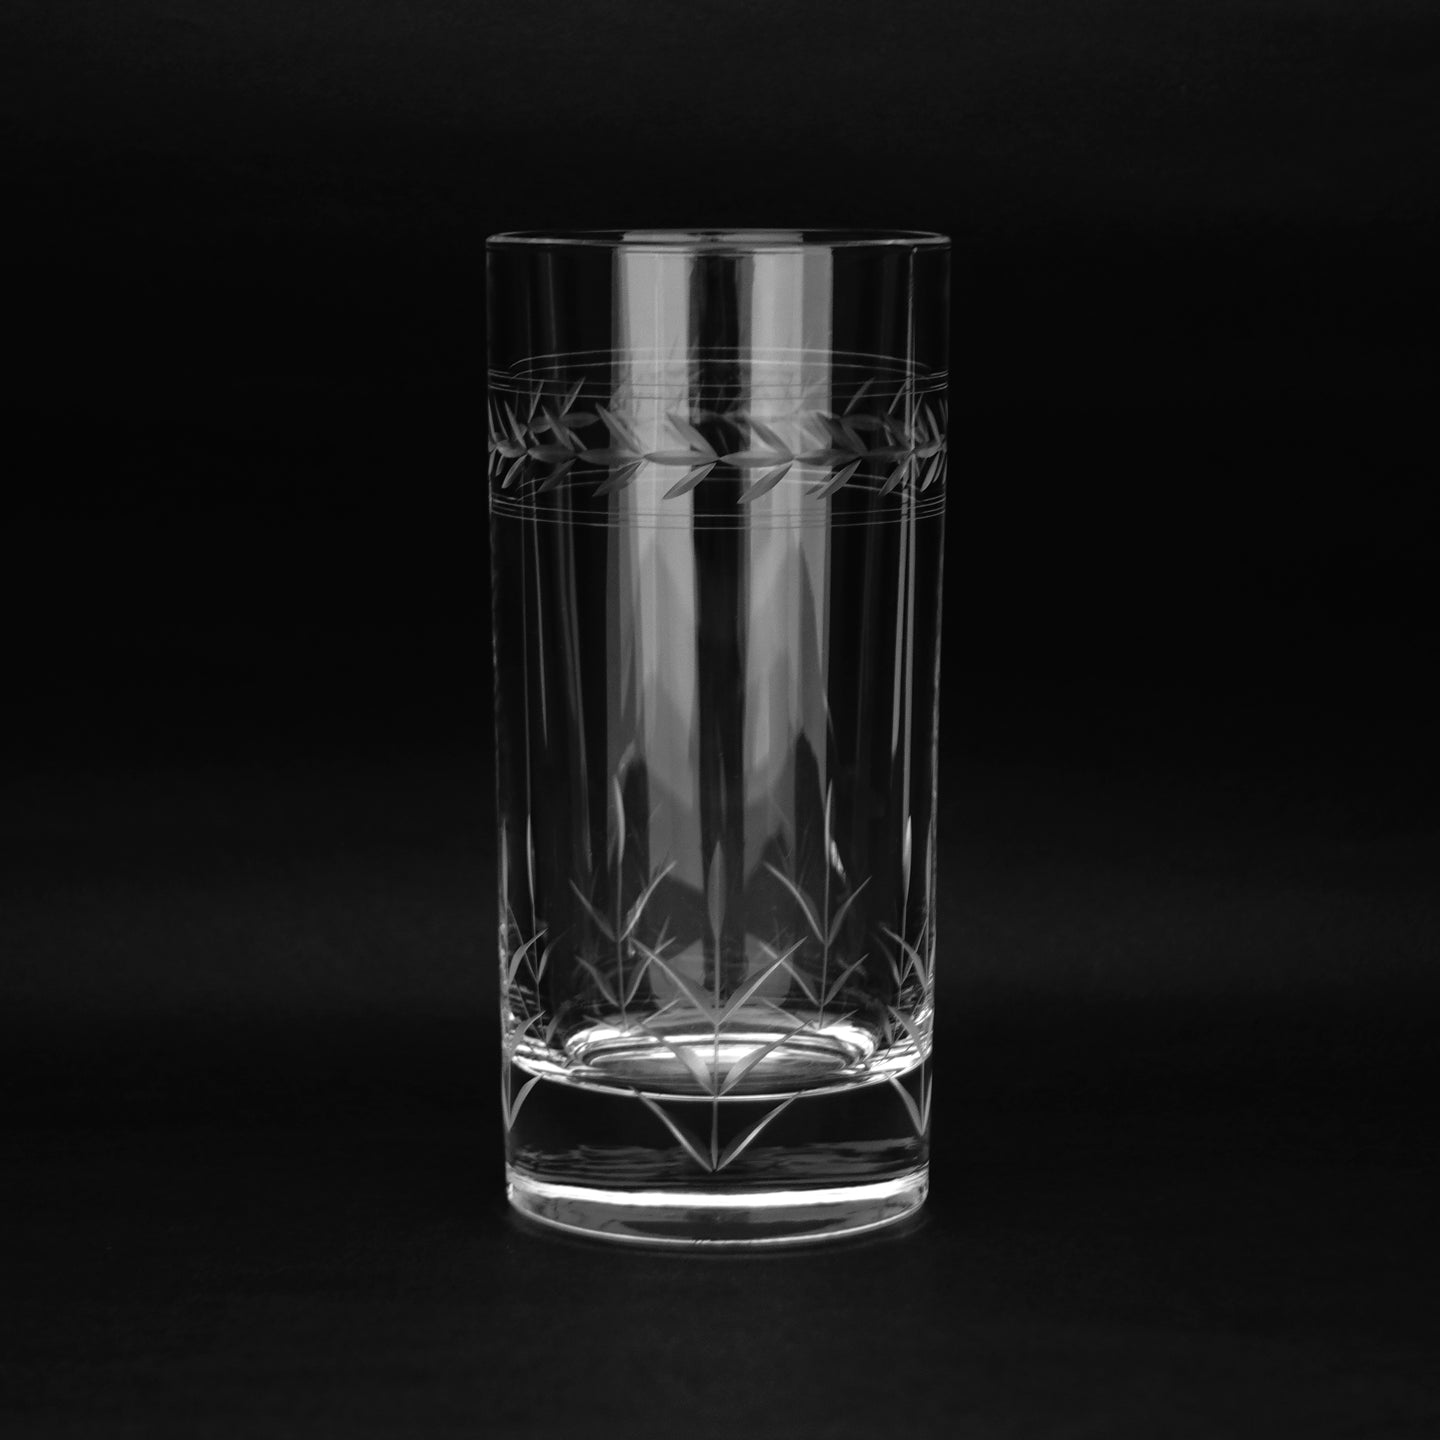 ピコタンブラー - THE GLASS GIFT SHOP SOKICHI